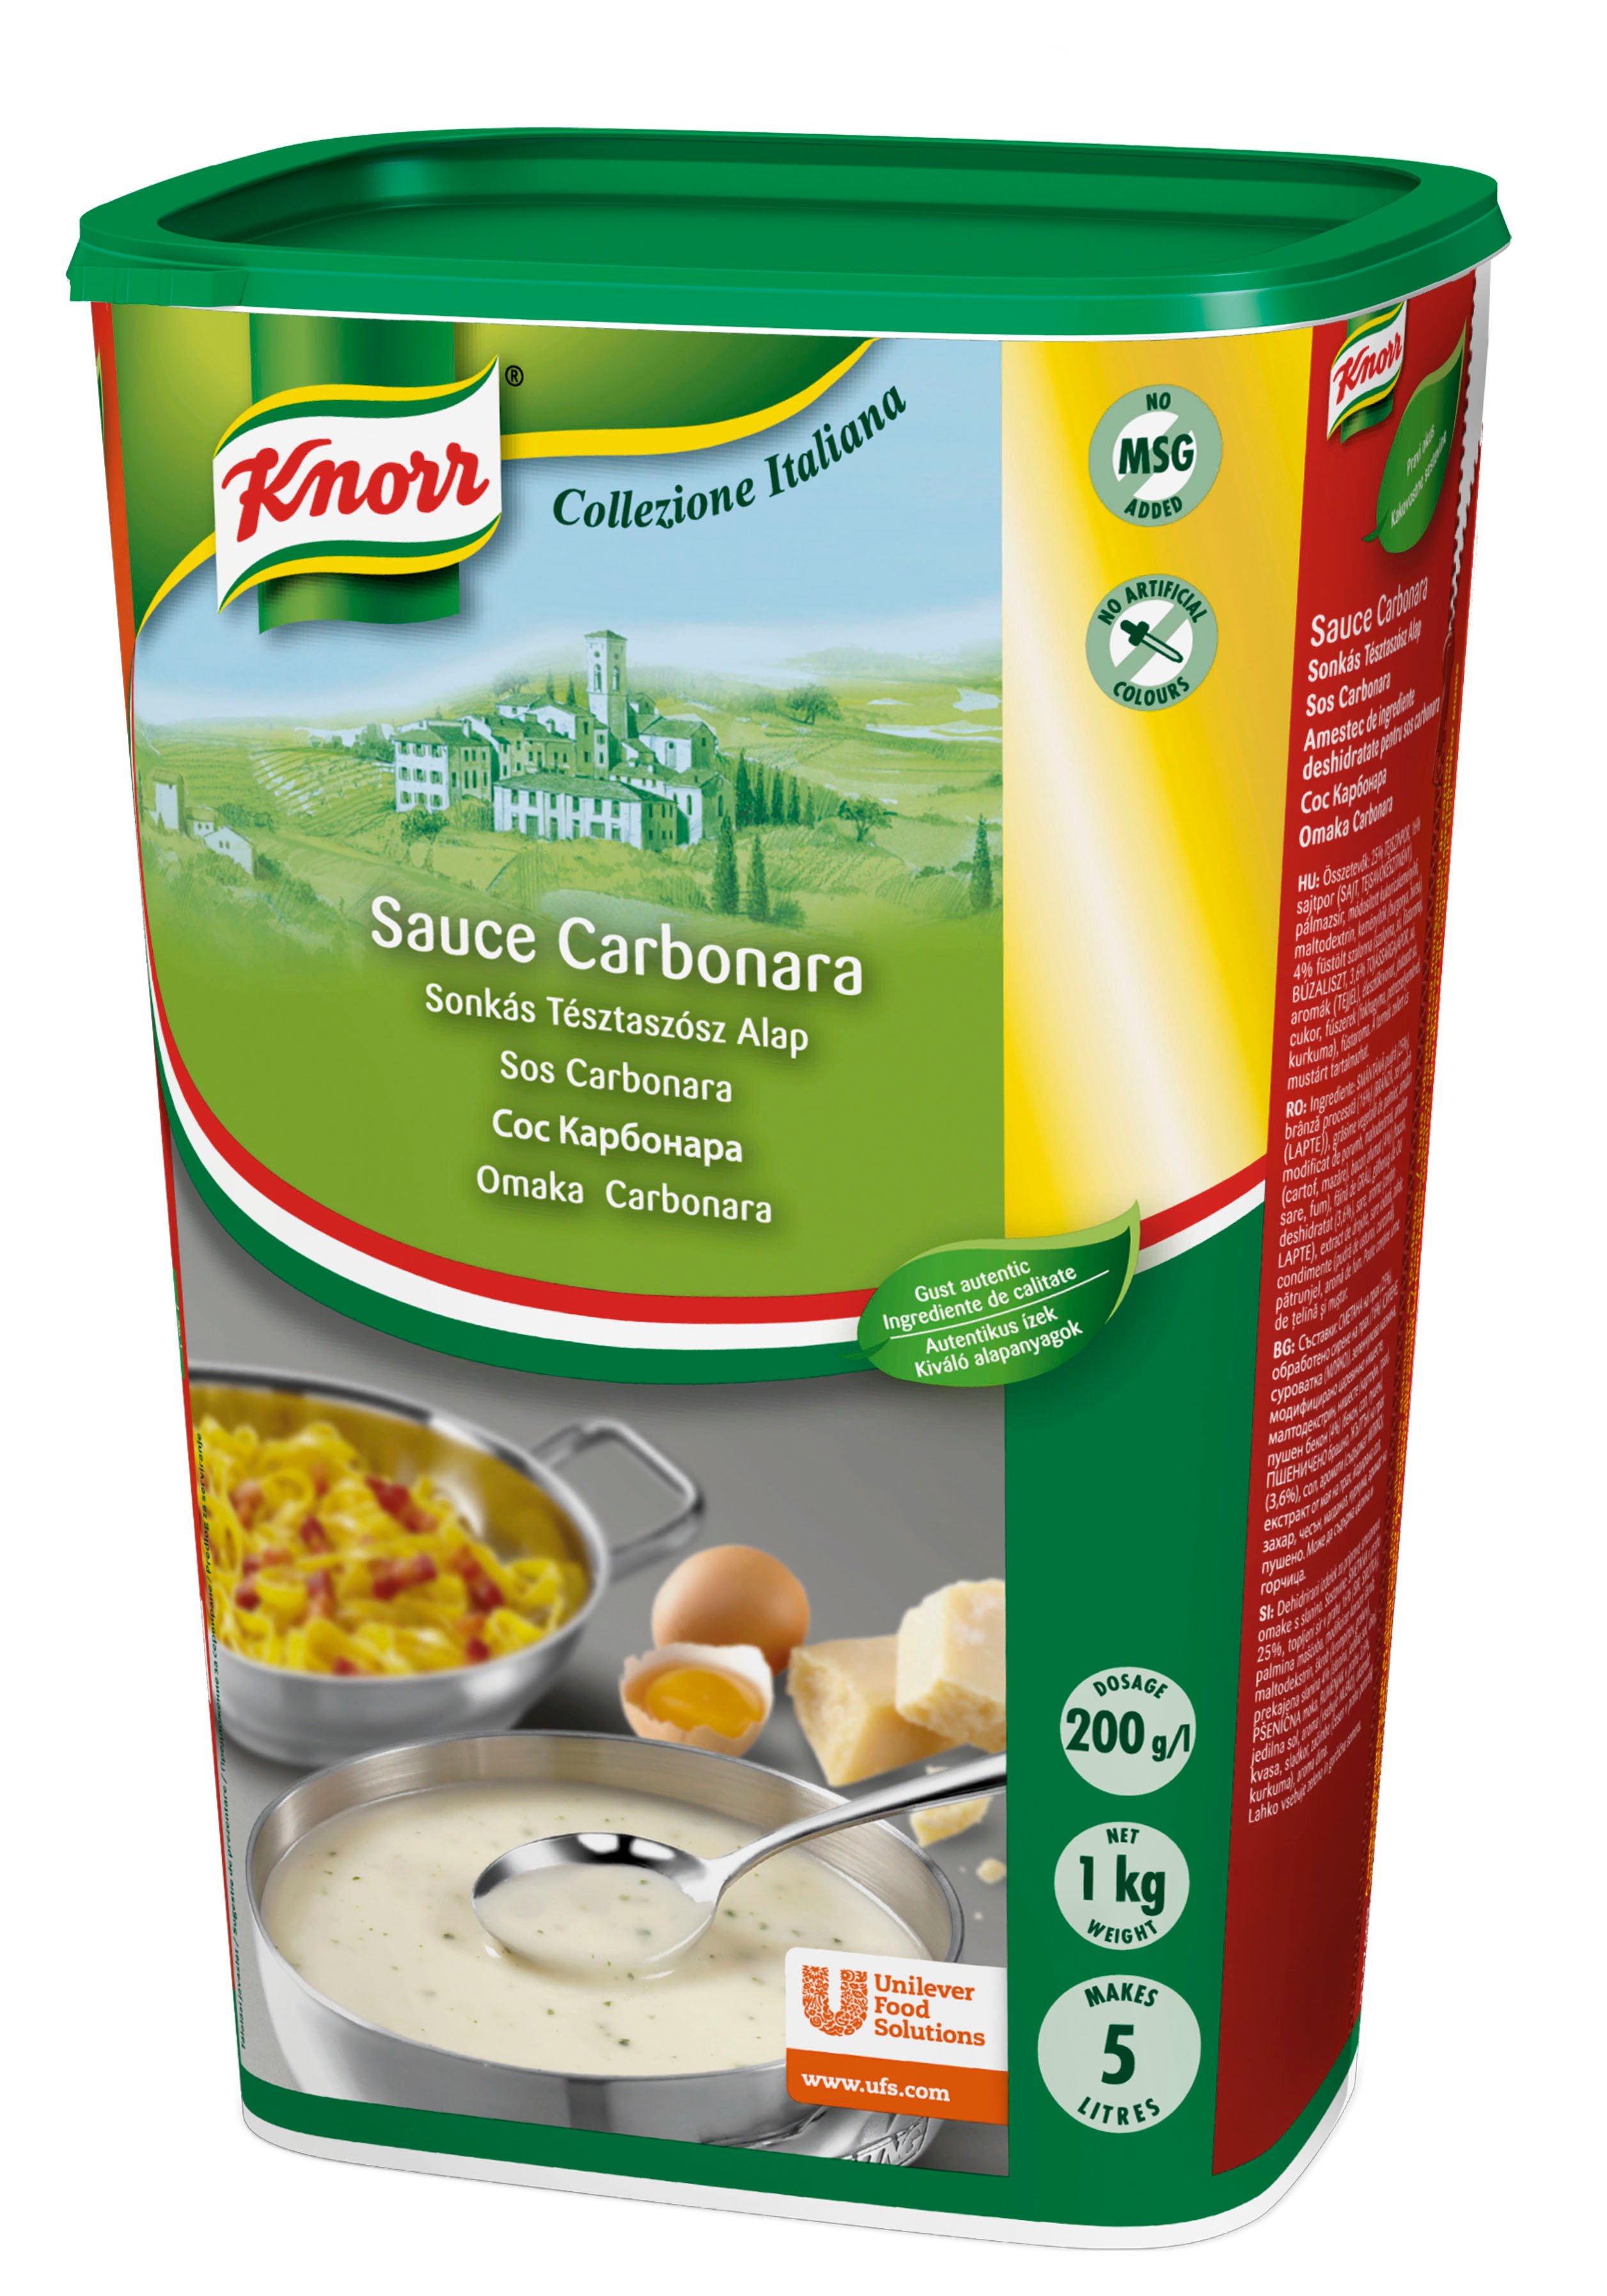 KNORR Collezione Italiana Sauce Carbonara (Sonkás tésztaszósz alap) 1kg - 